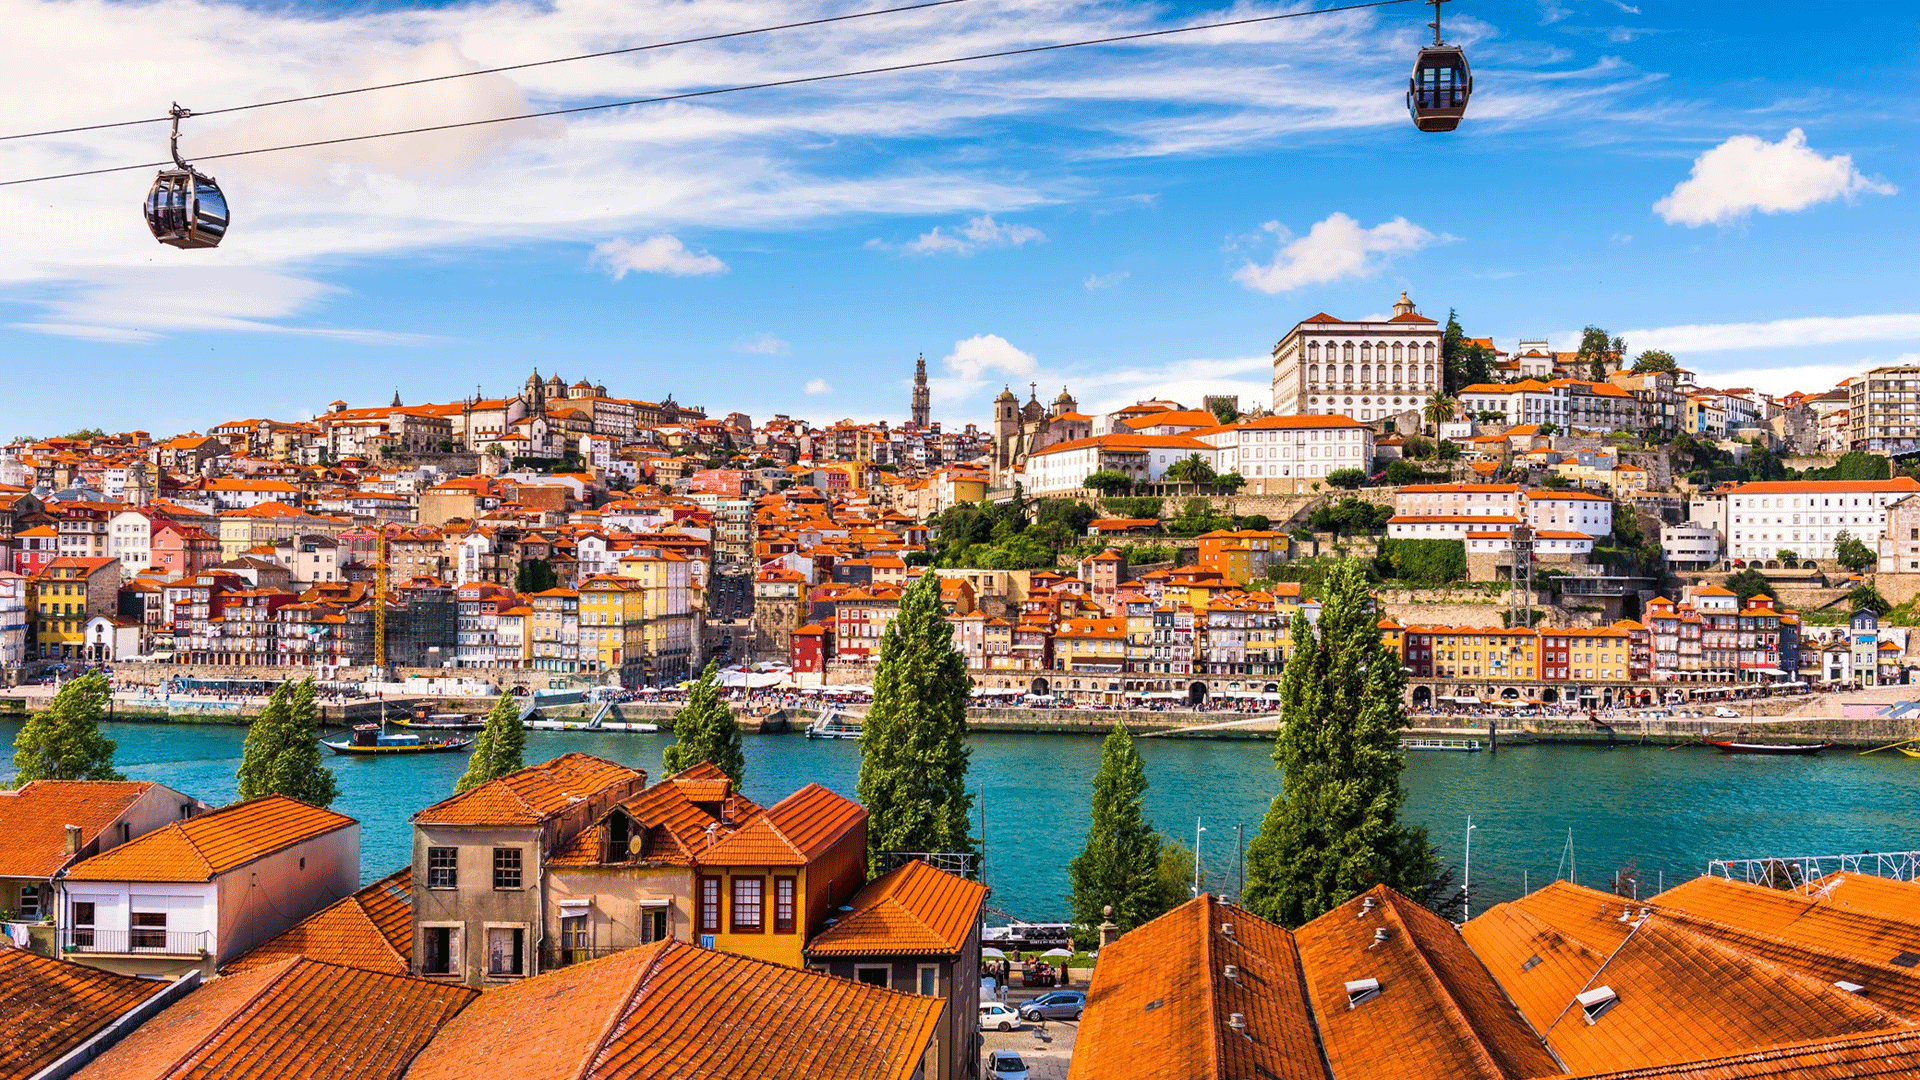 portugal-porto-duoro-river-old-town